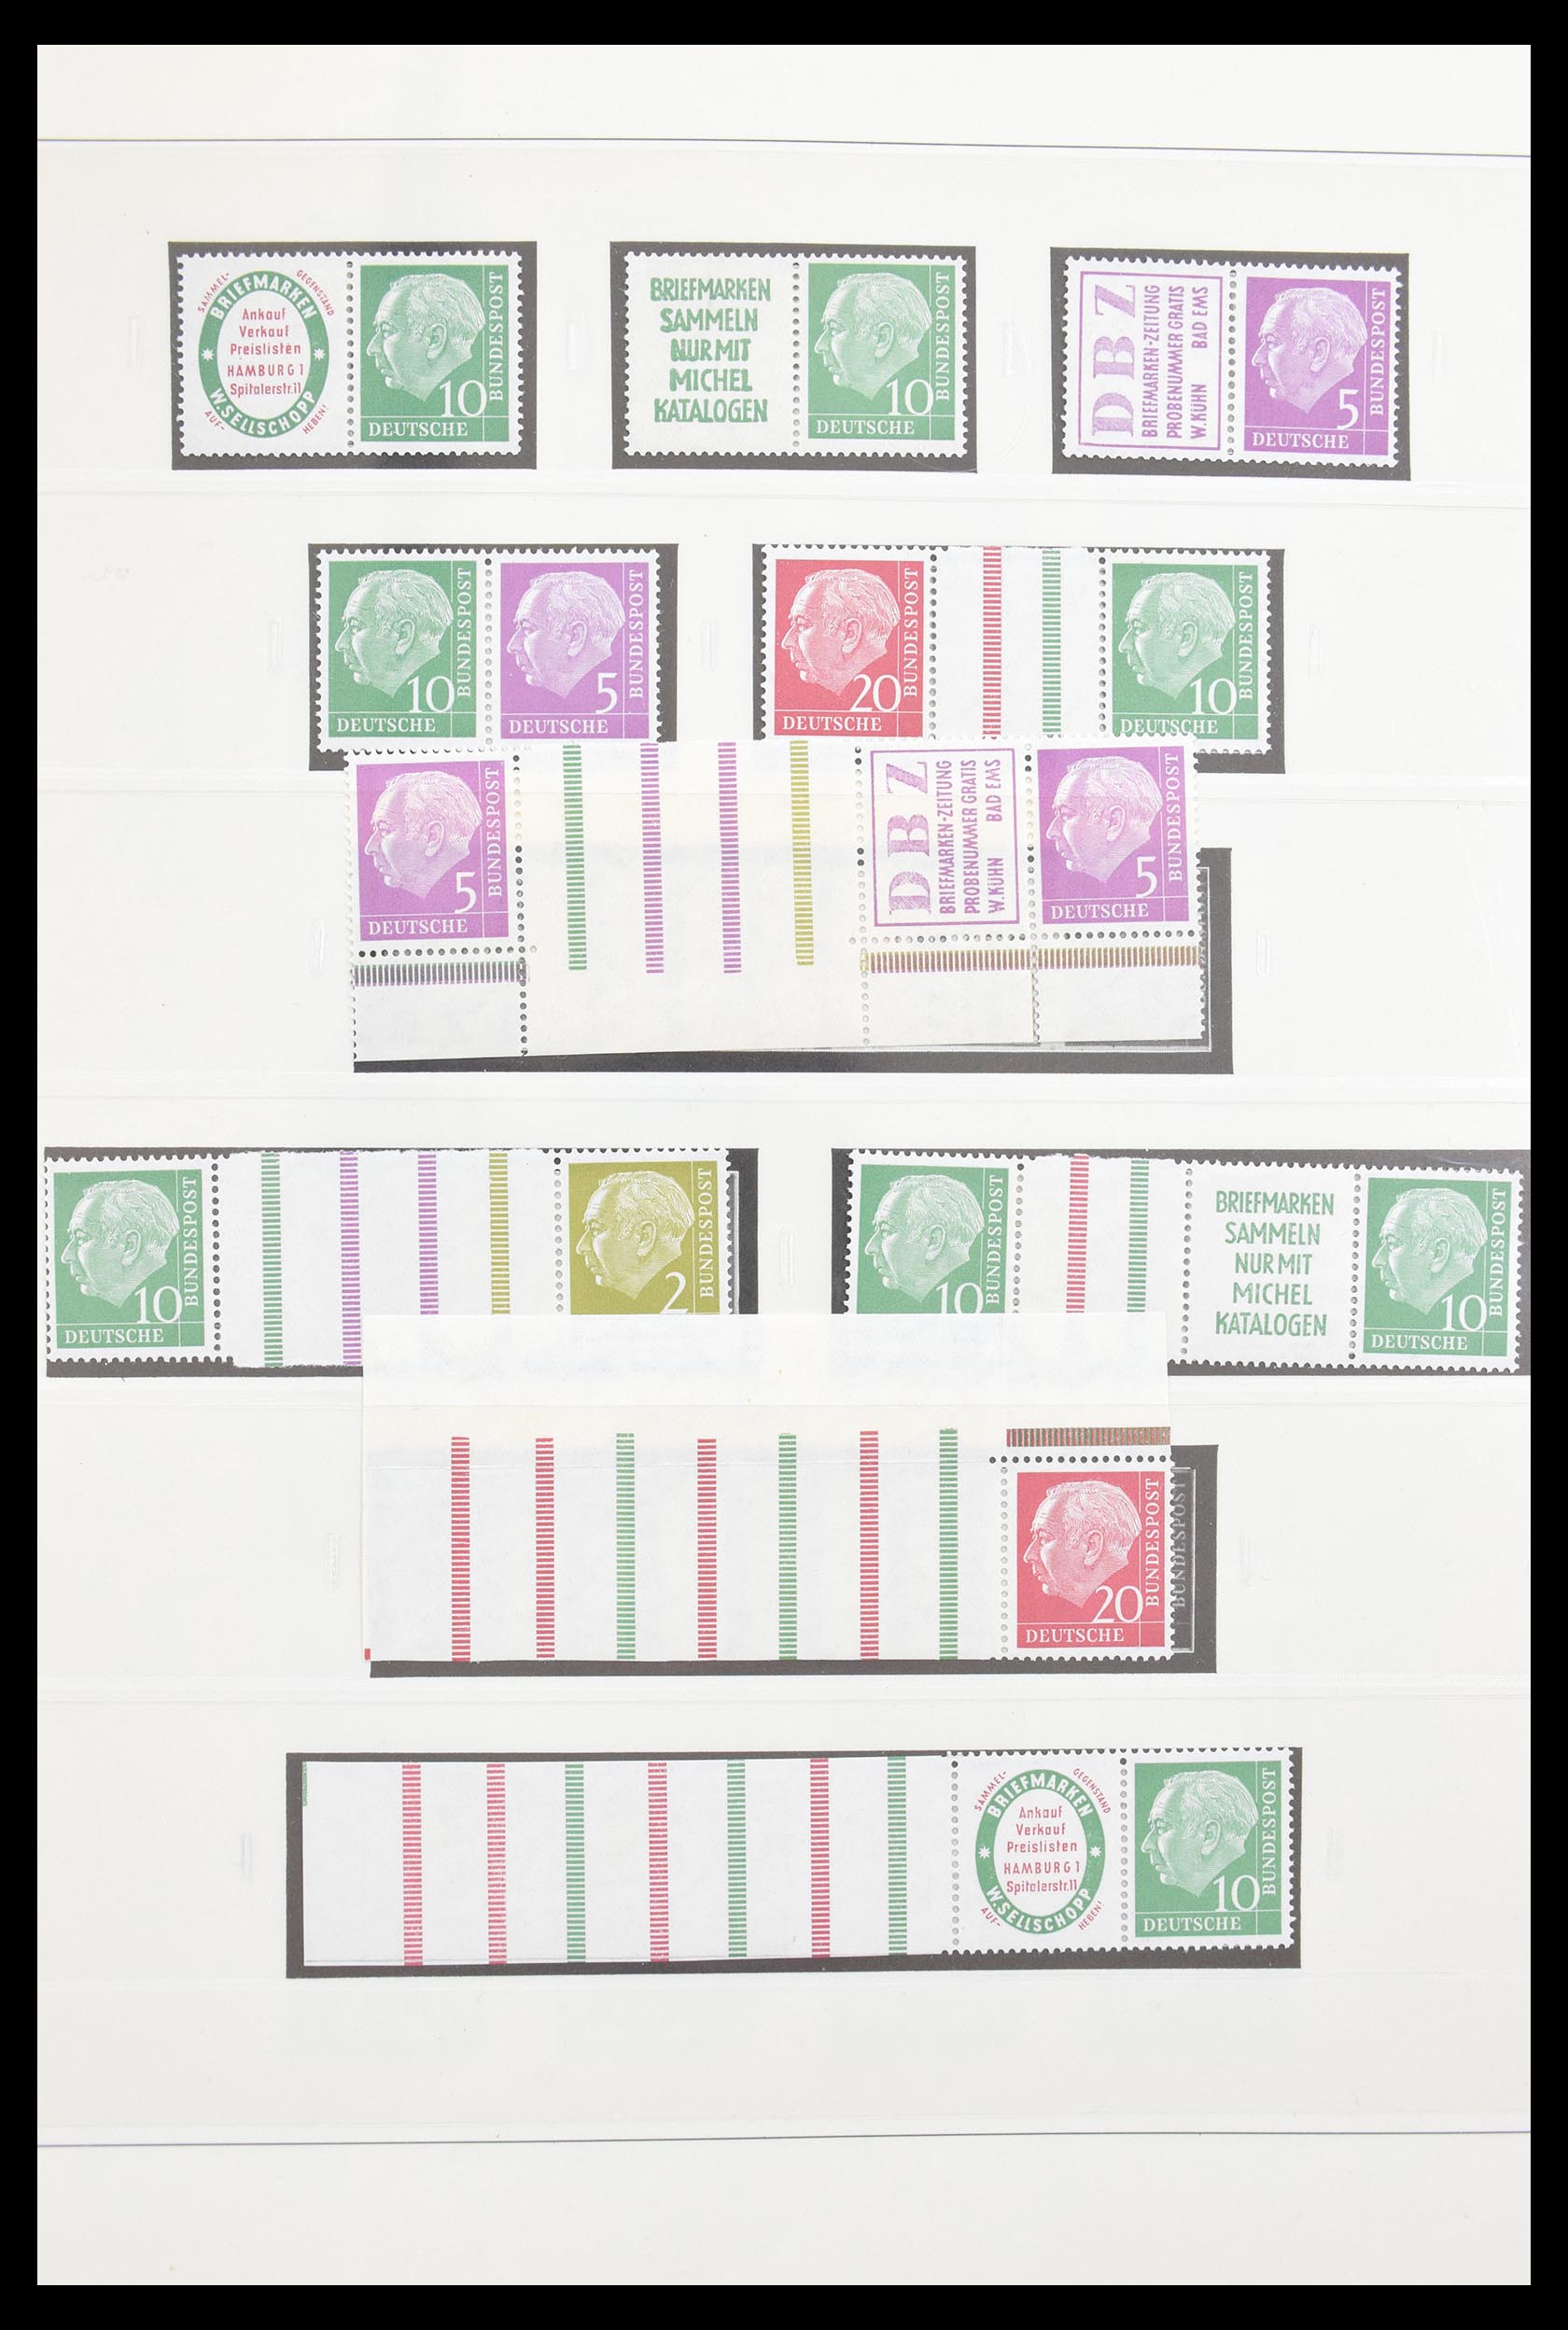 30605 003 - 30605 Bundespost combinaties 1951-1974.